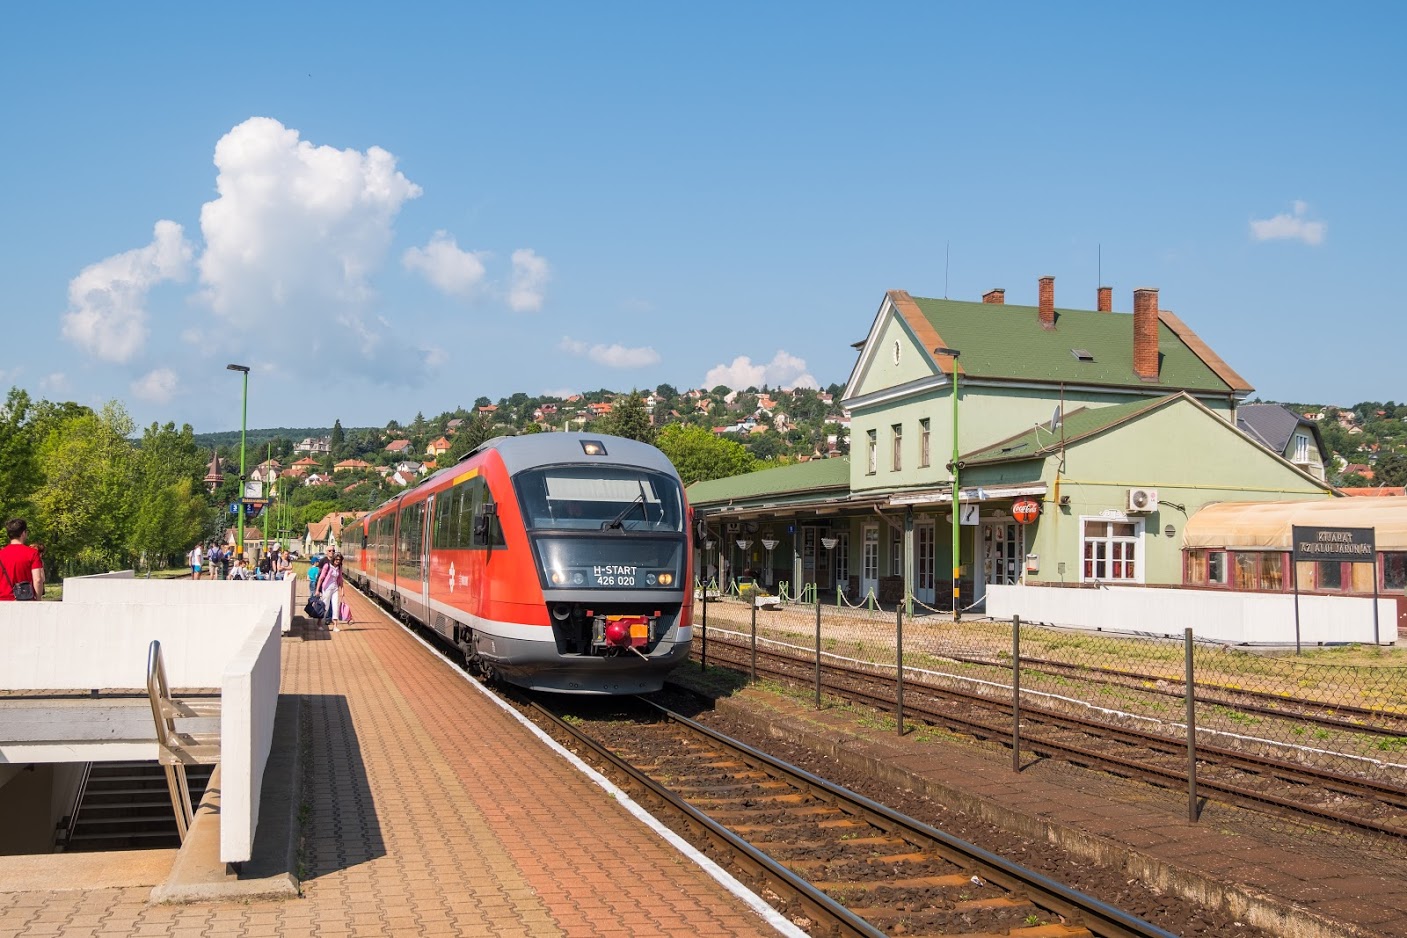 Megkezdődött a 29-es vonal keleti, Szabadbattyán–Balatonfüred szakaszának villamosítása. A beruházás során több állomás át is fog épülni 2021 nyarára (fotó: Vörös Attila)